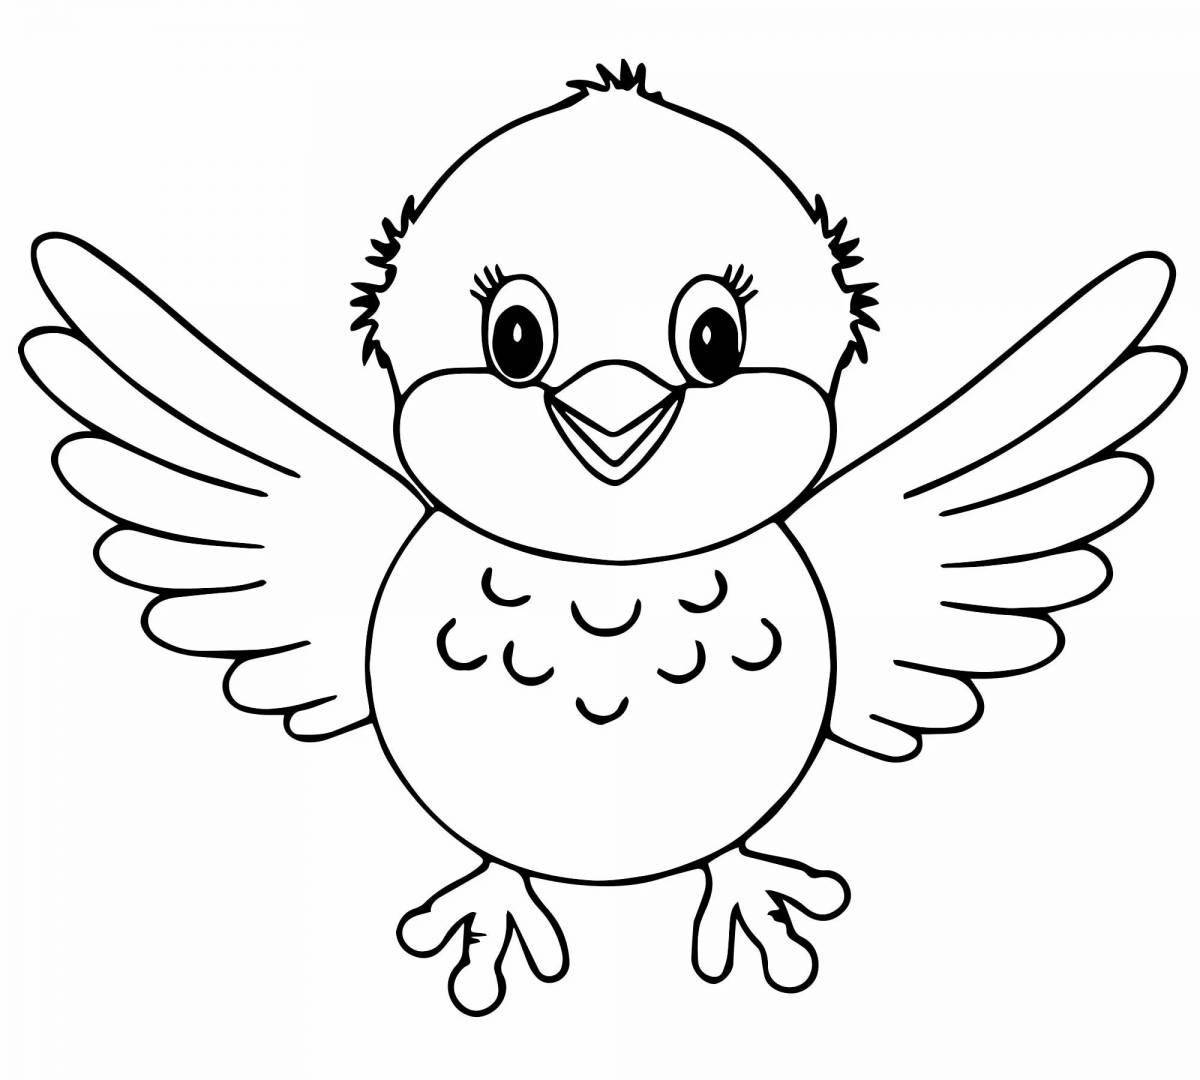 Сказочная страница раскраски птиц для детей 4-5 лет